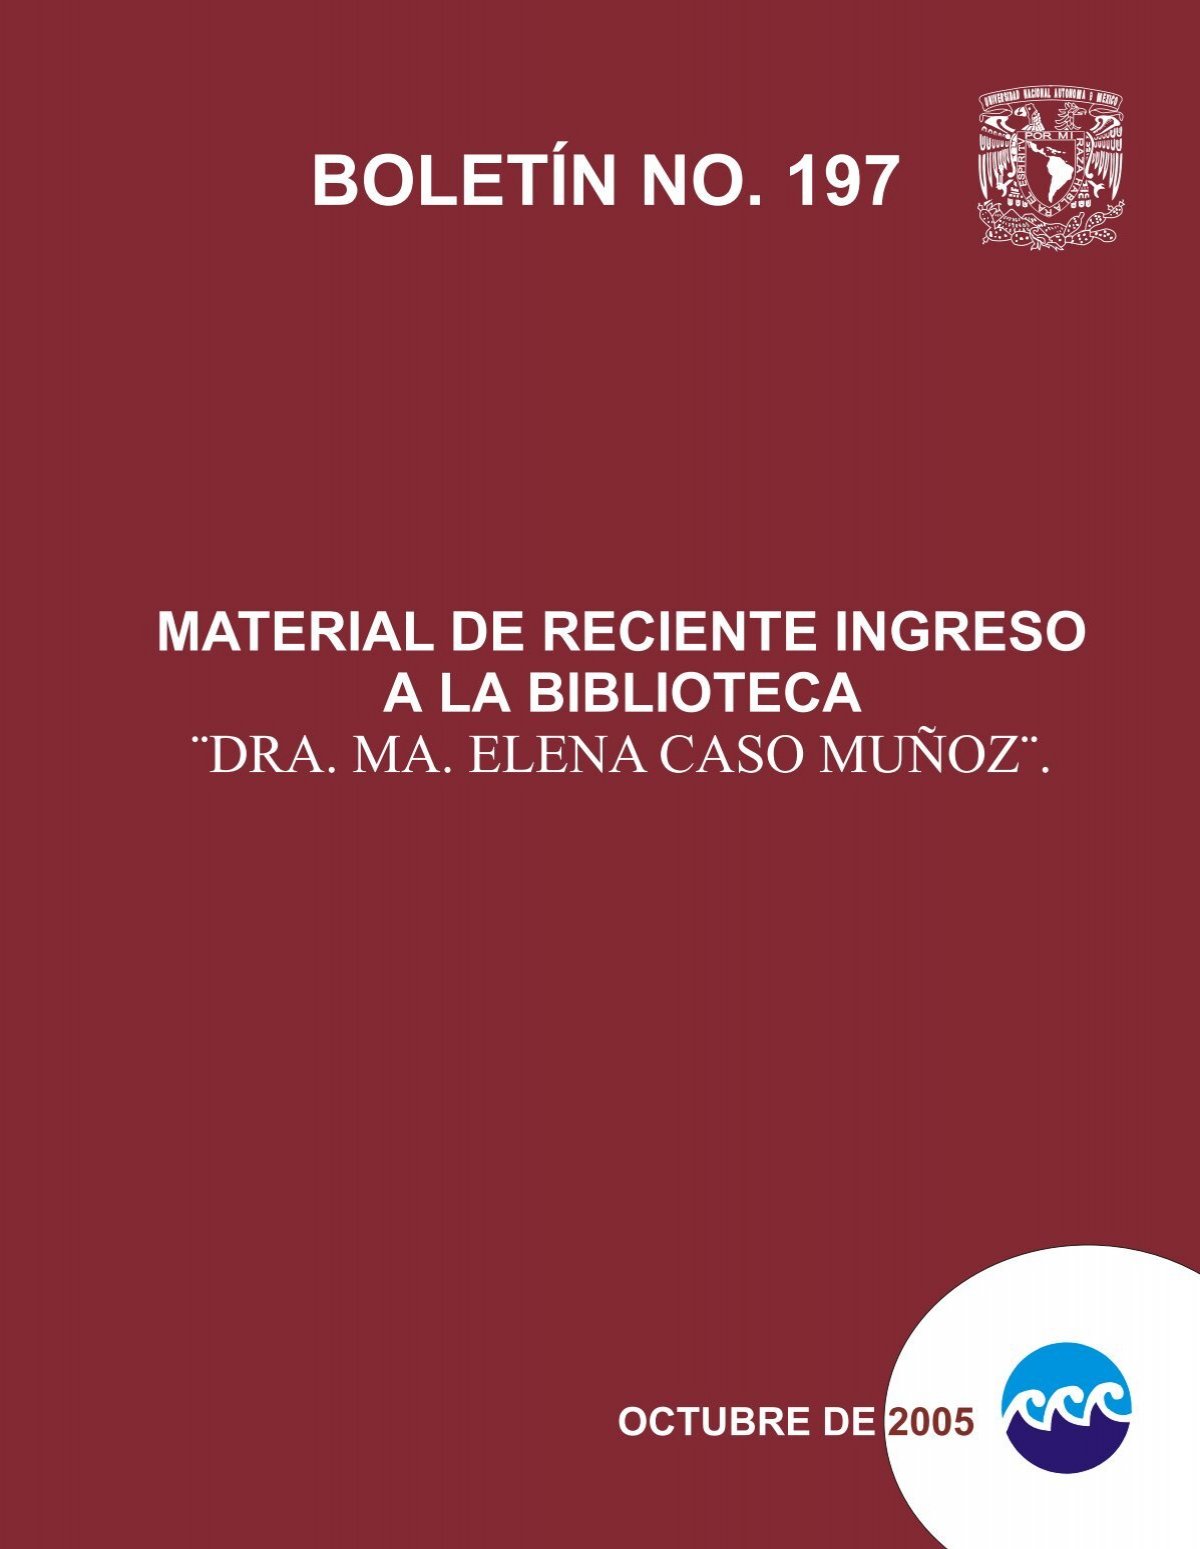 BOLETÃ NO. 197 - Instituto de Ciencias y LimnologÃa